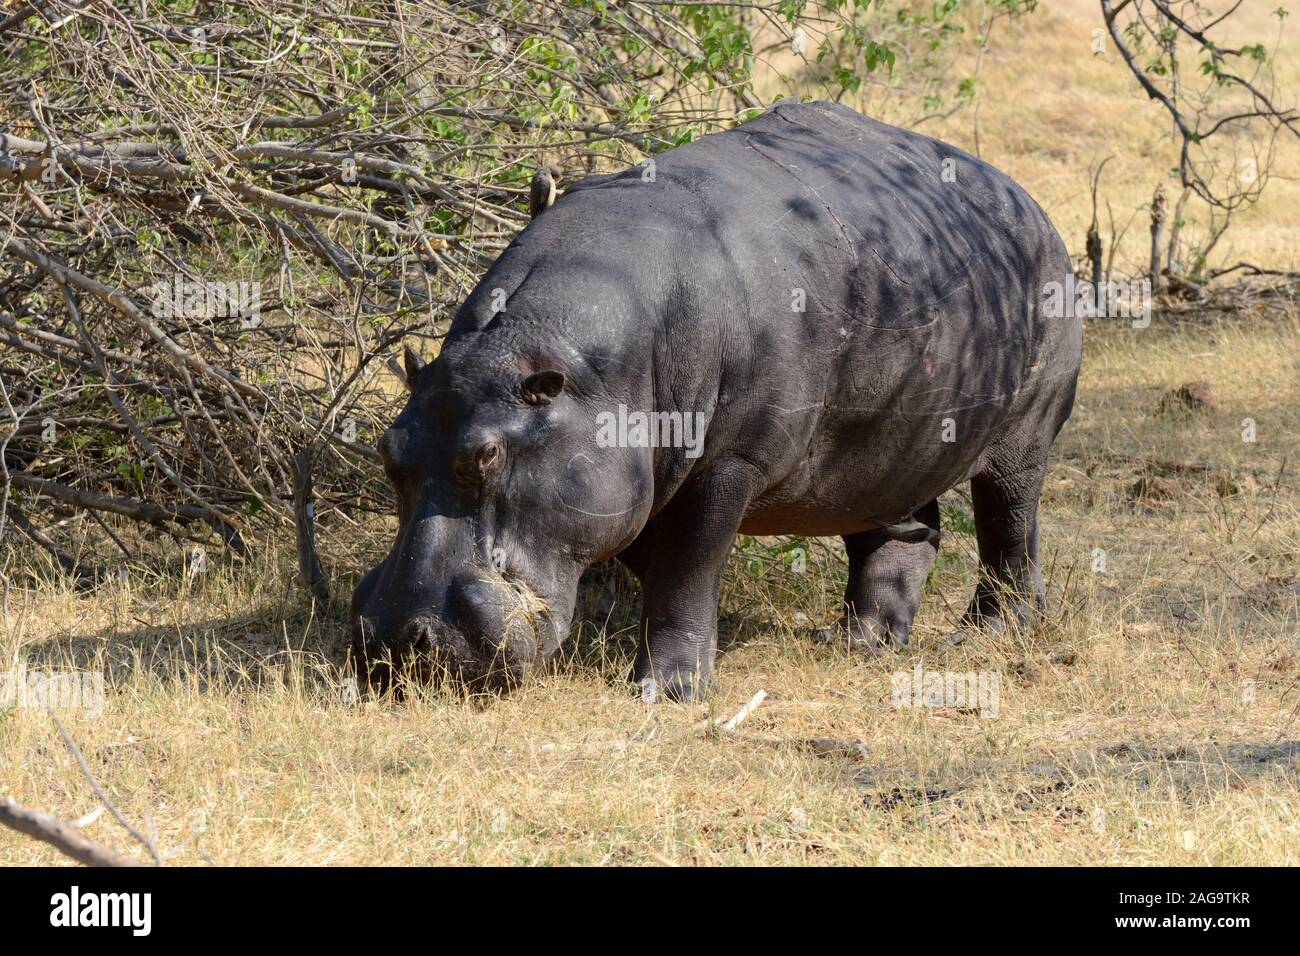 Pâturage d'hippopotame marques montrant des dommages à la peau du parc national de Moremi Game Reserve Afrique Botswana Banque D'Images